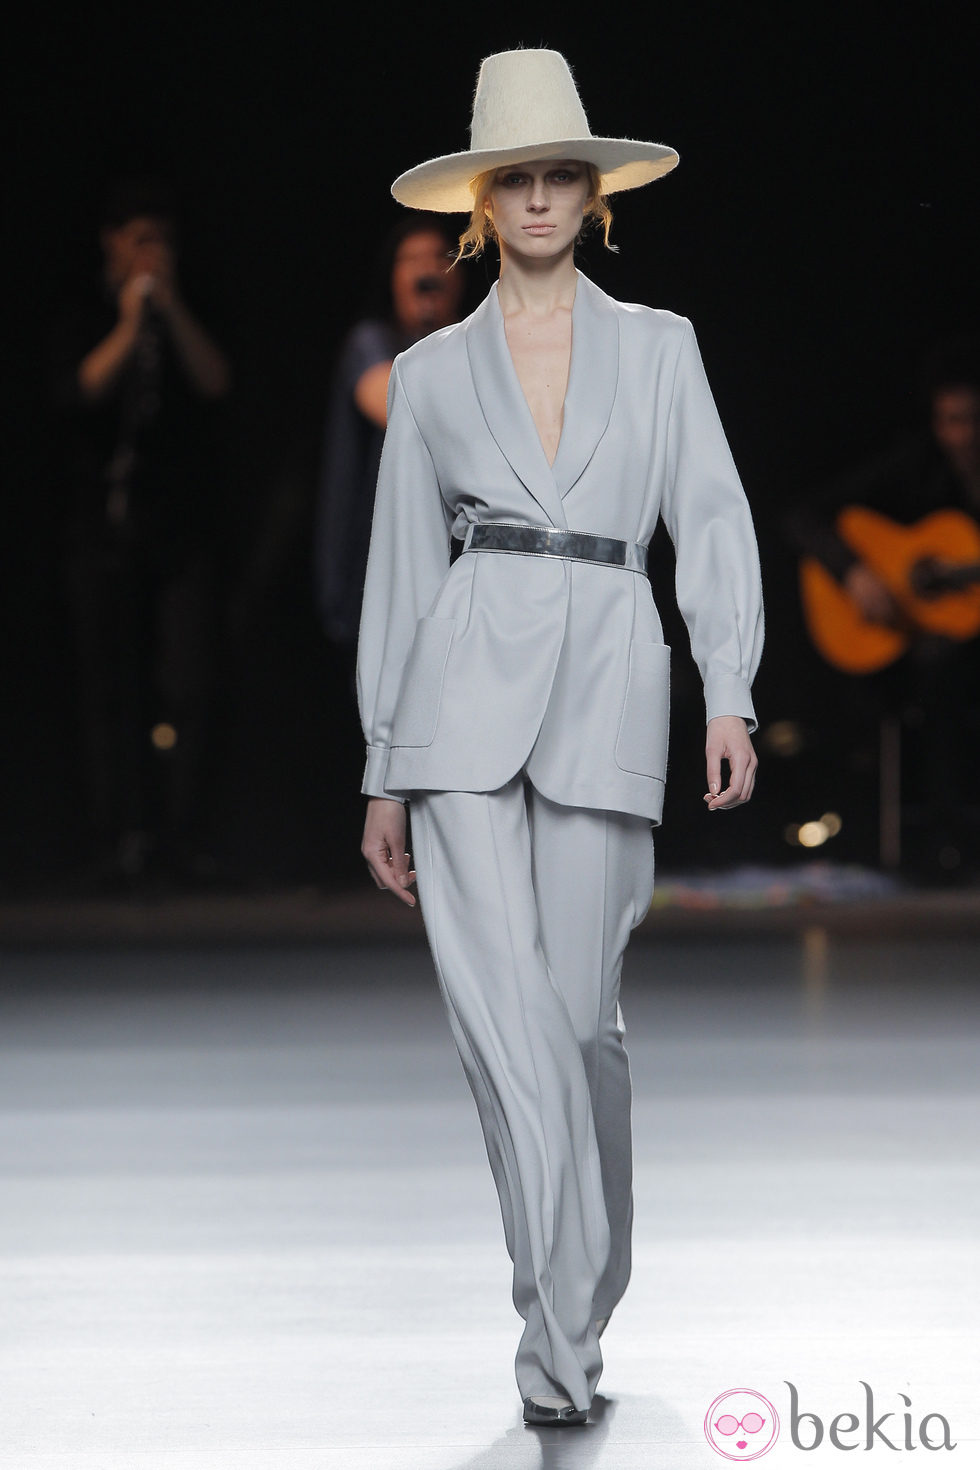 Traje de pantalón de la colección otoño/invierno 2013/2014 de Duyos en Madrid Fashion Week